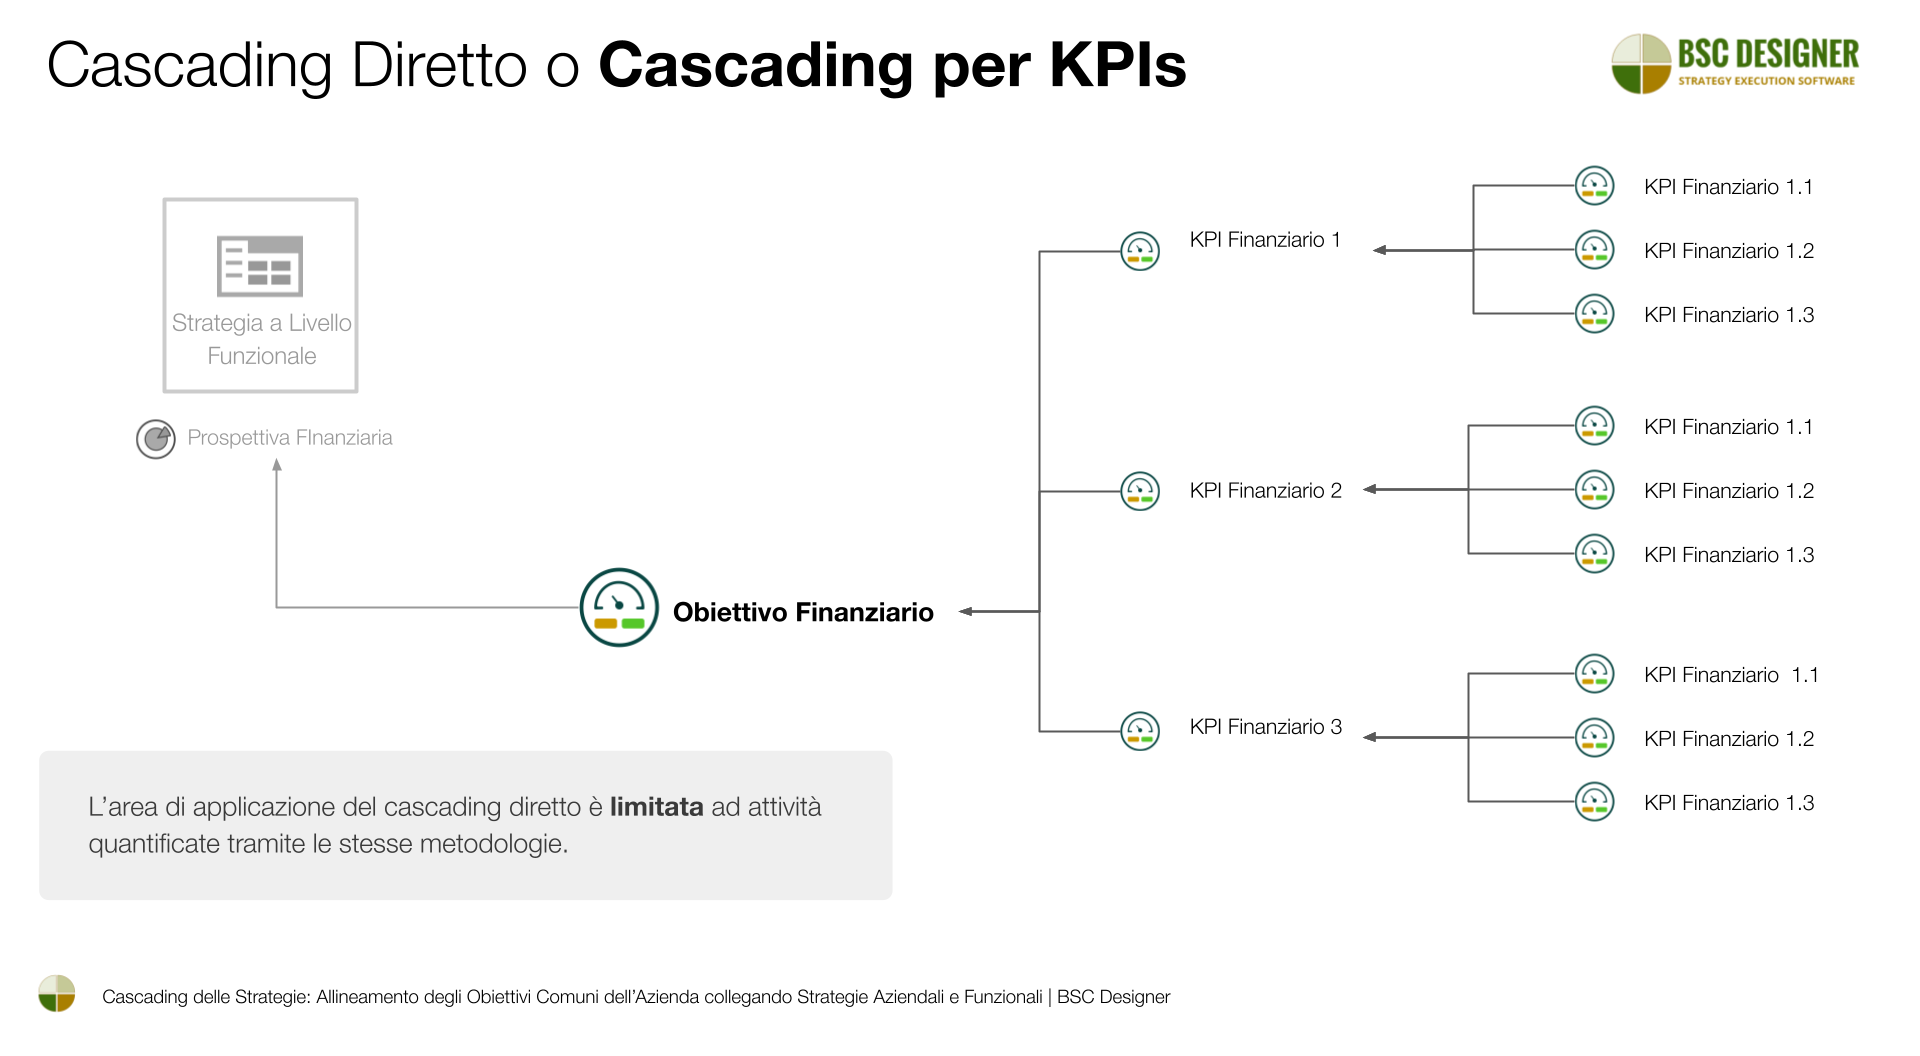 Metodo 3 di Cascading: Cascading Diretto o per KPIs